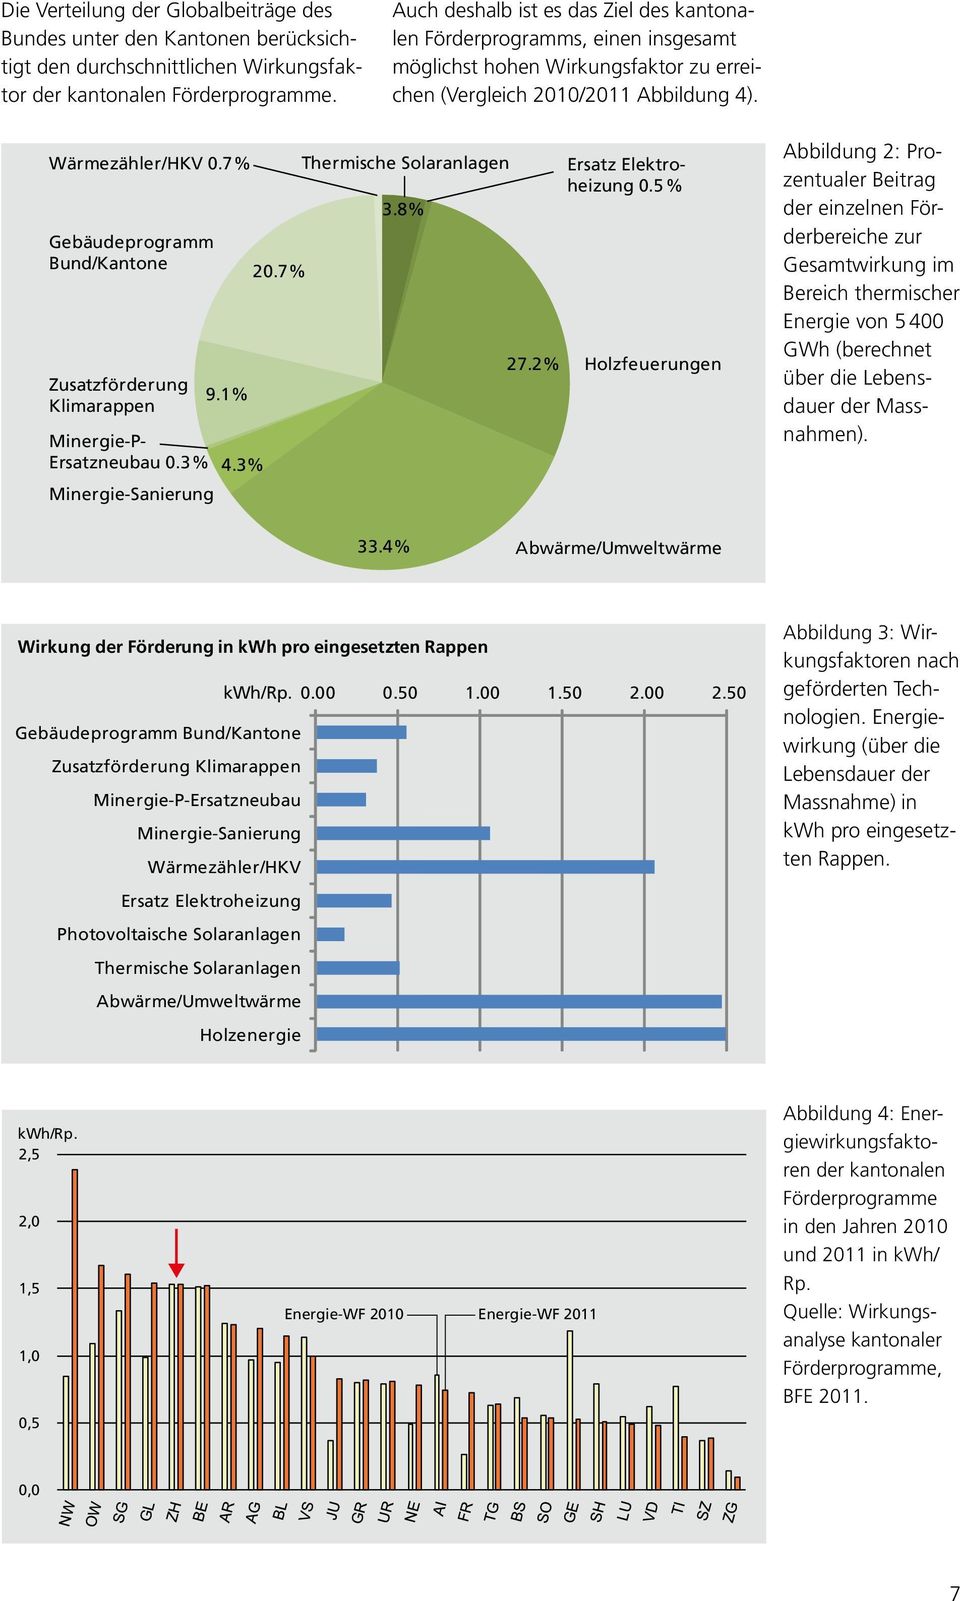 7 % Gebäudeprogramm Bund/Kantone Zusatzförderung Klimarappen Minergie-P- Ersatzneubau 0.3 % Minergie-Sanierung 9.1% 4.3% 20.7% Thermische Solaranlagen 3.8% 27.2% Ersatz Elektroheizung 0.